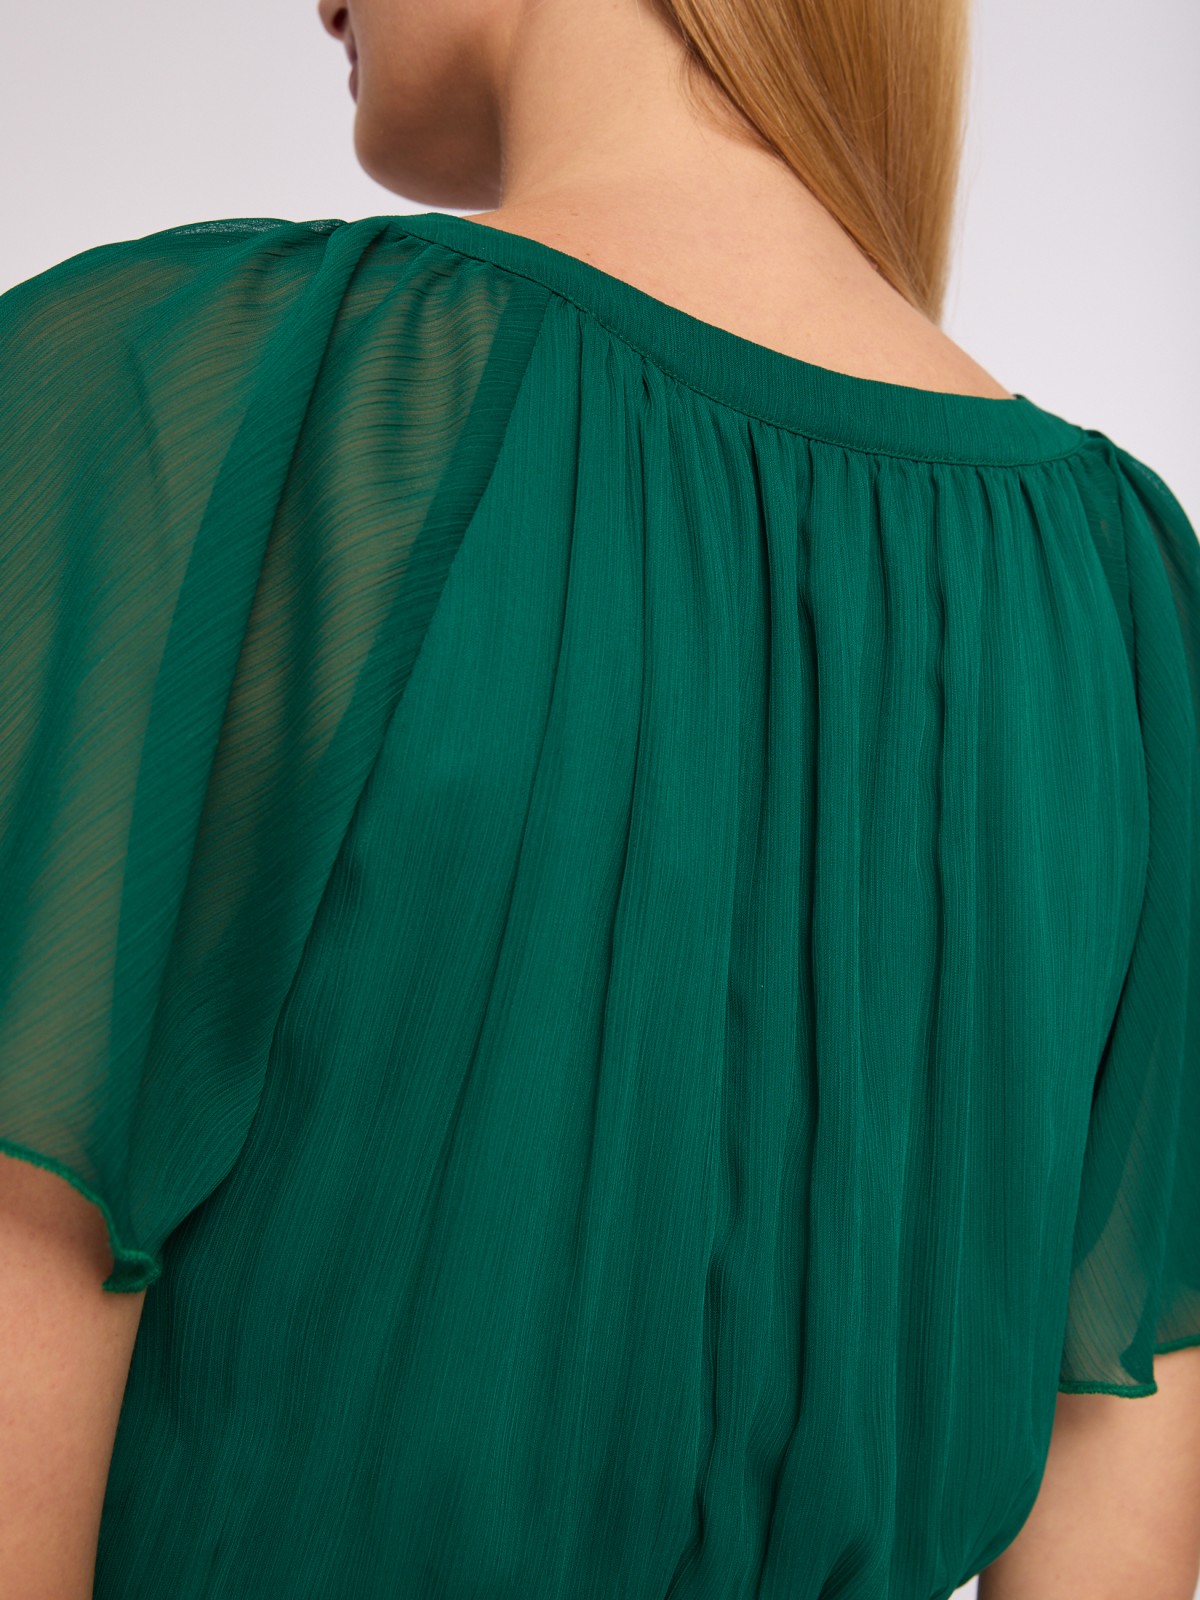 Шифоновое платье мини без принта zolla 024238262092, цвет темно-зеленый, размер M - фото 6